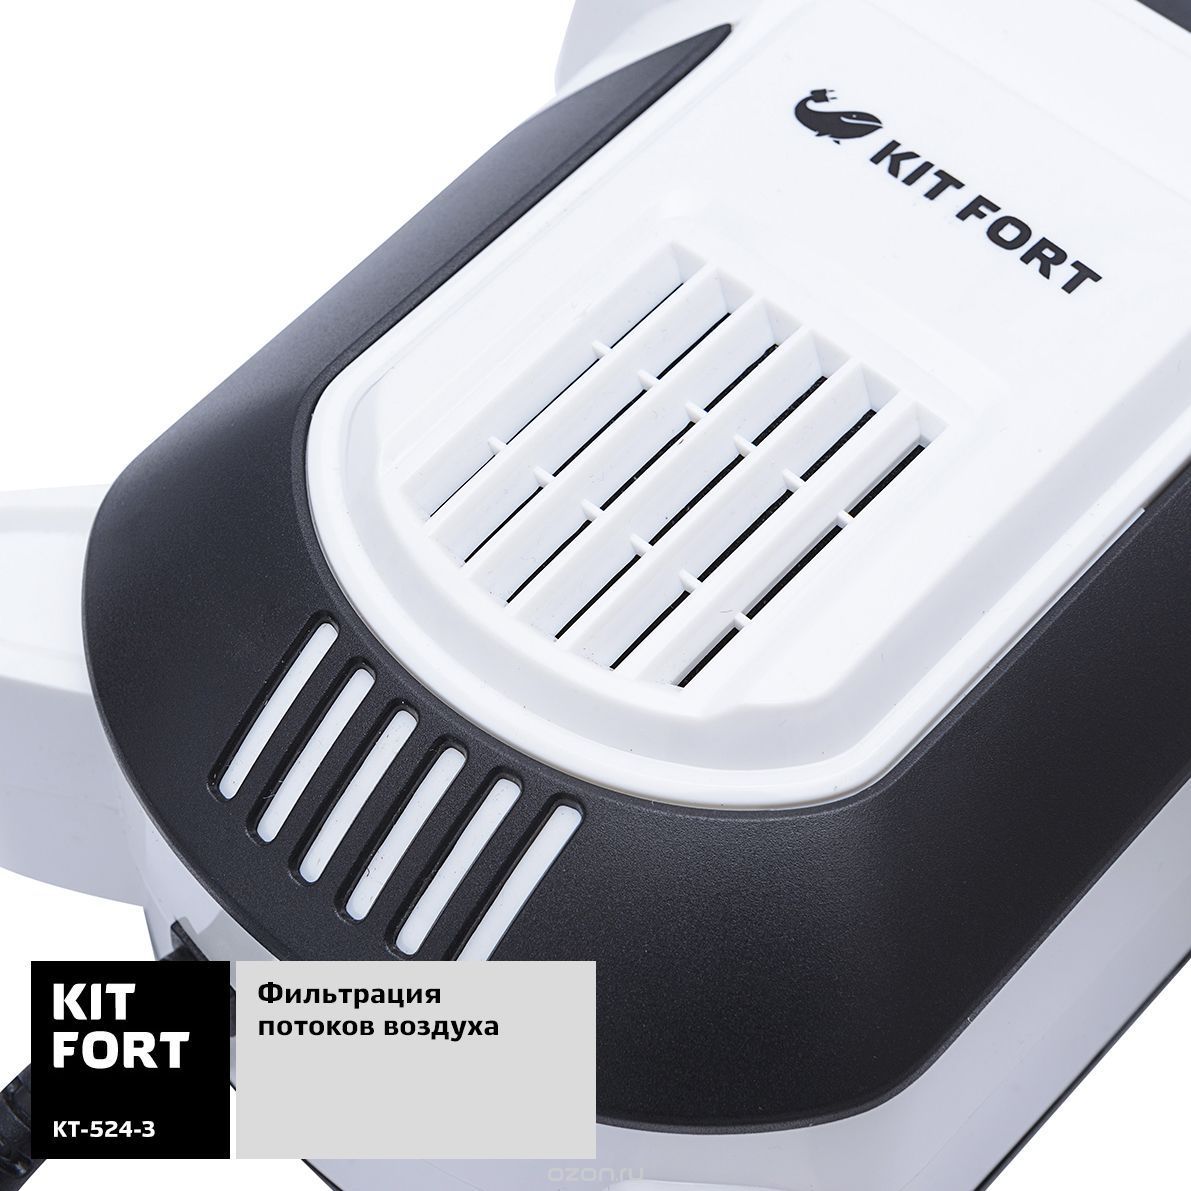   Kitfort -524, White Black